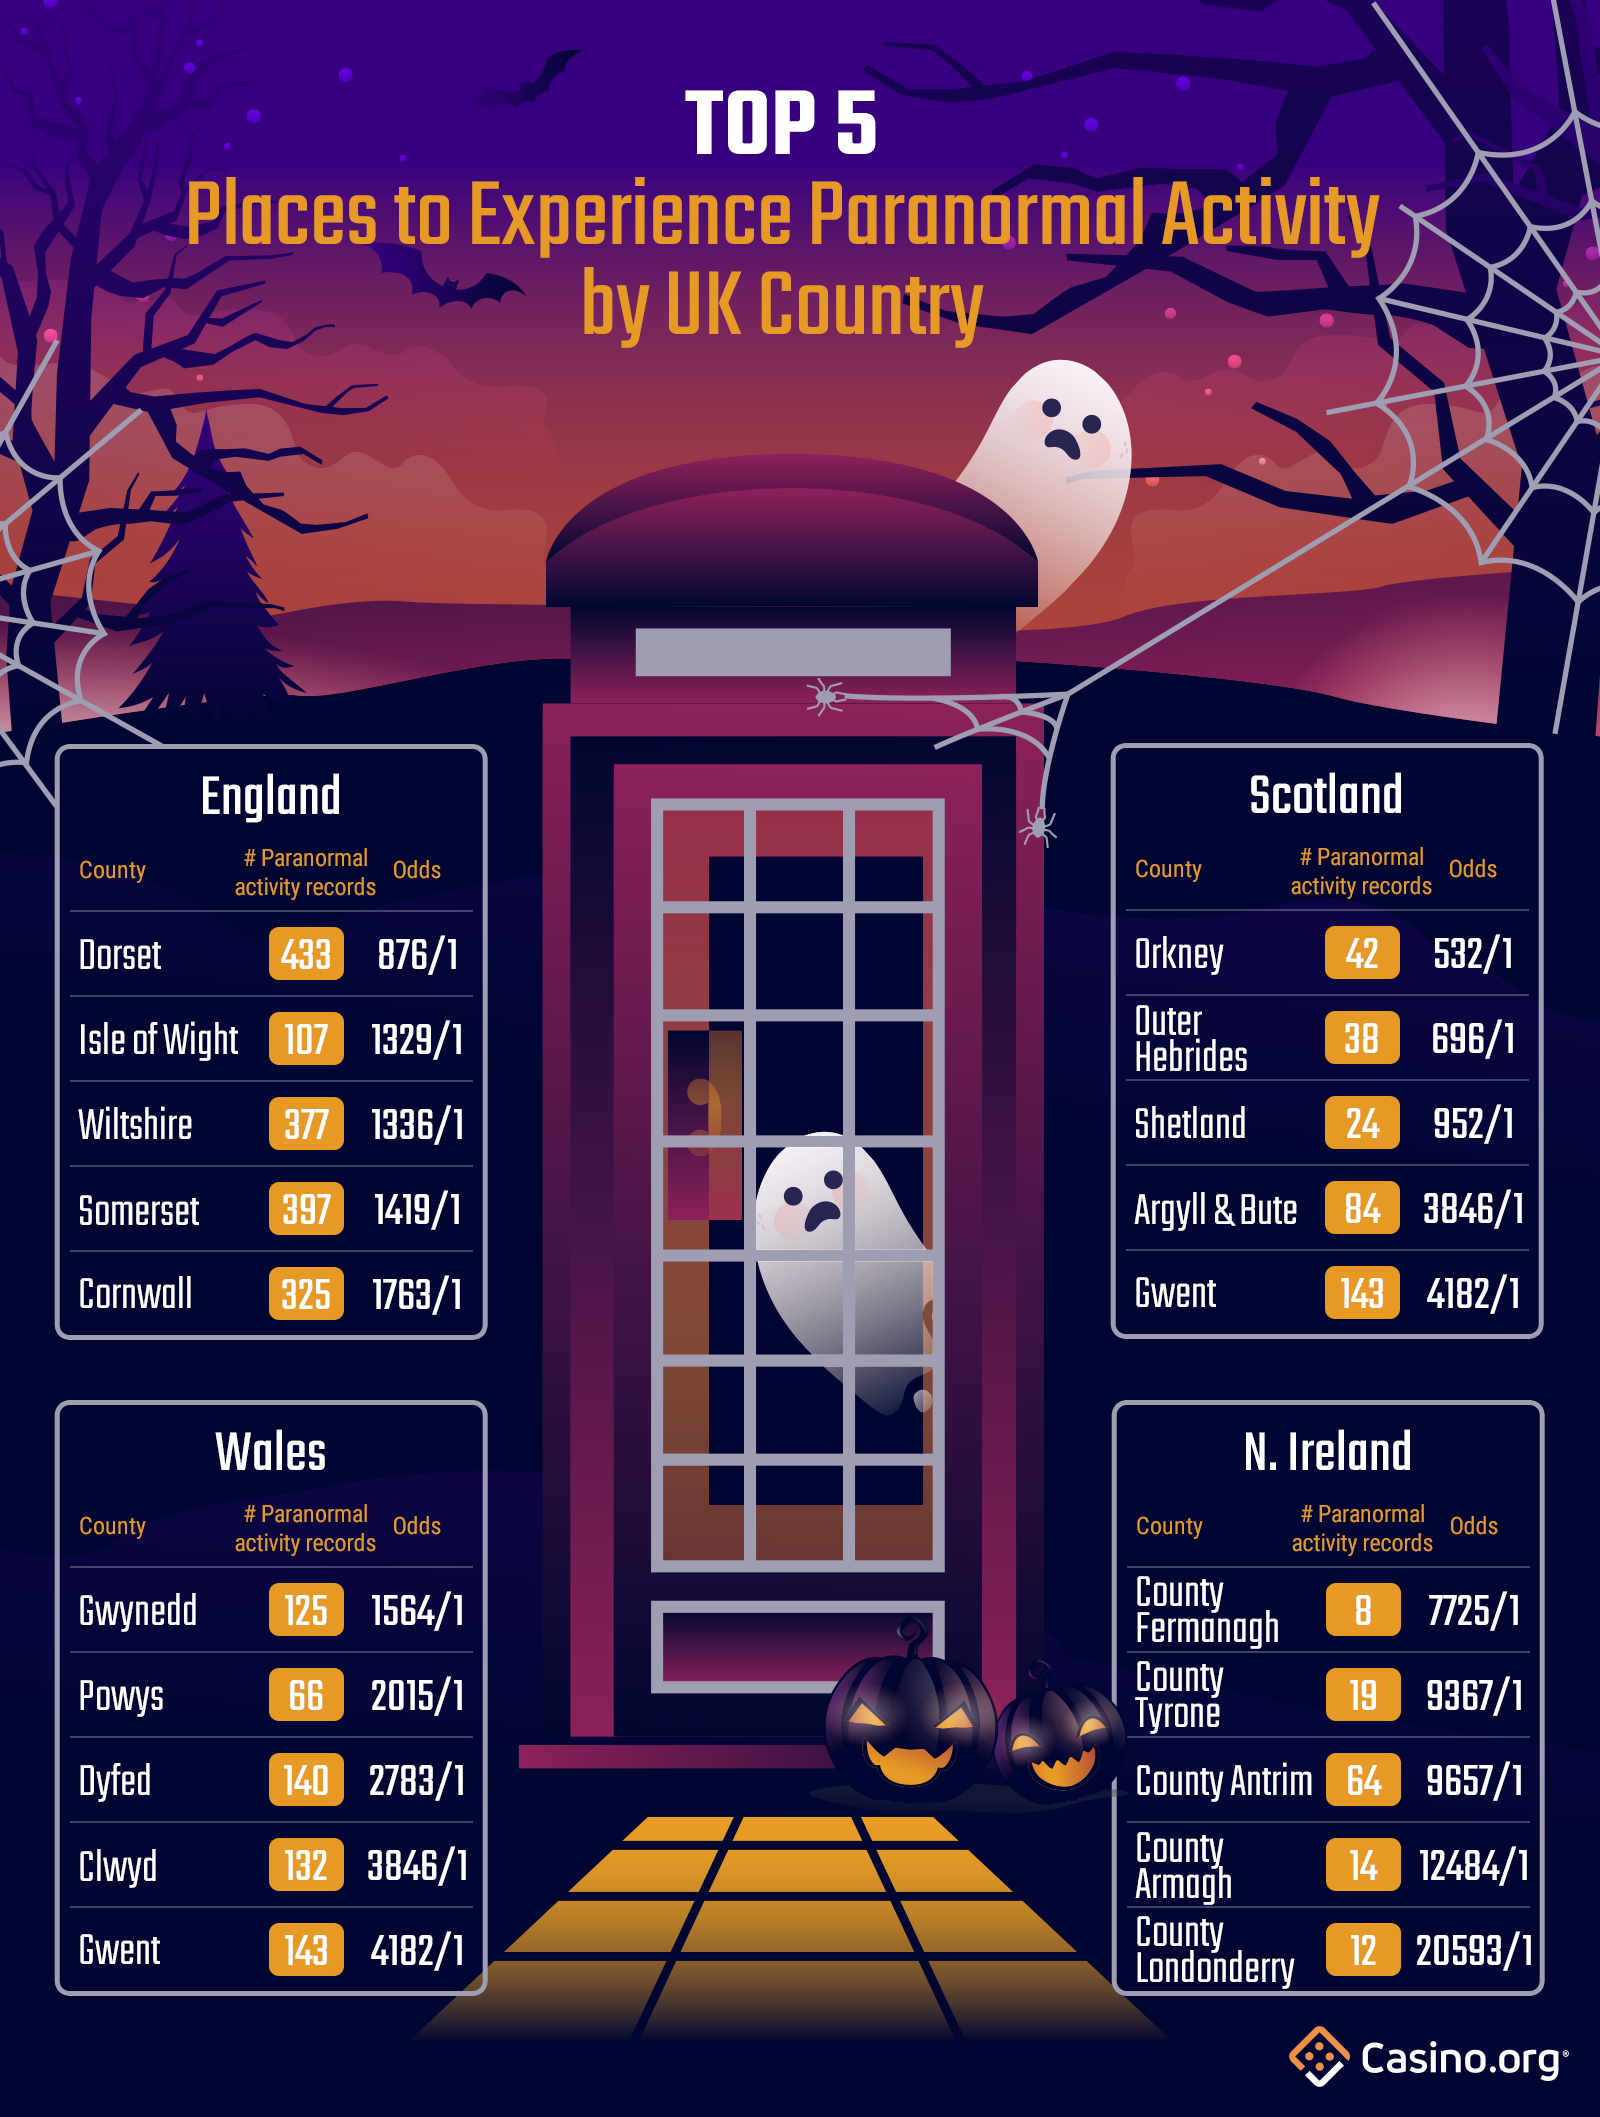 5 Tempat Teratas Untuk Mengalami Aktivitas Paranormal Menurut Negara Inggris 